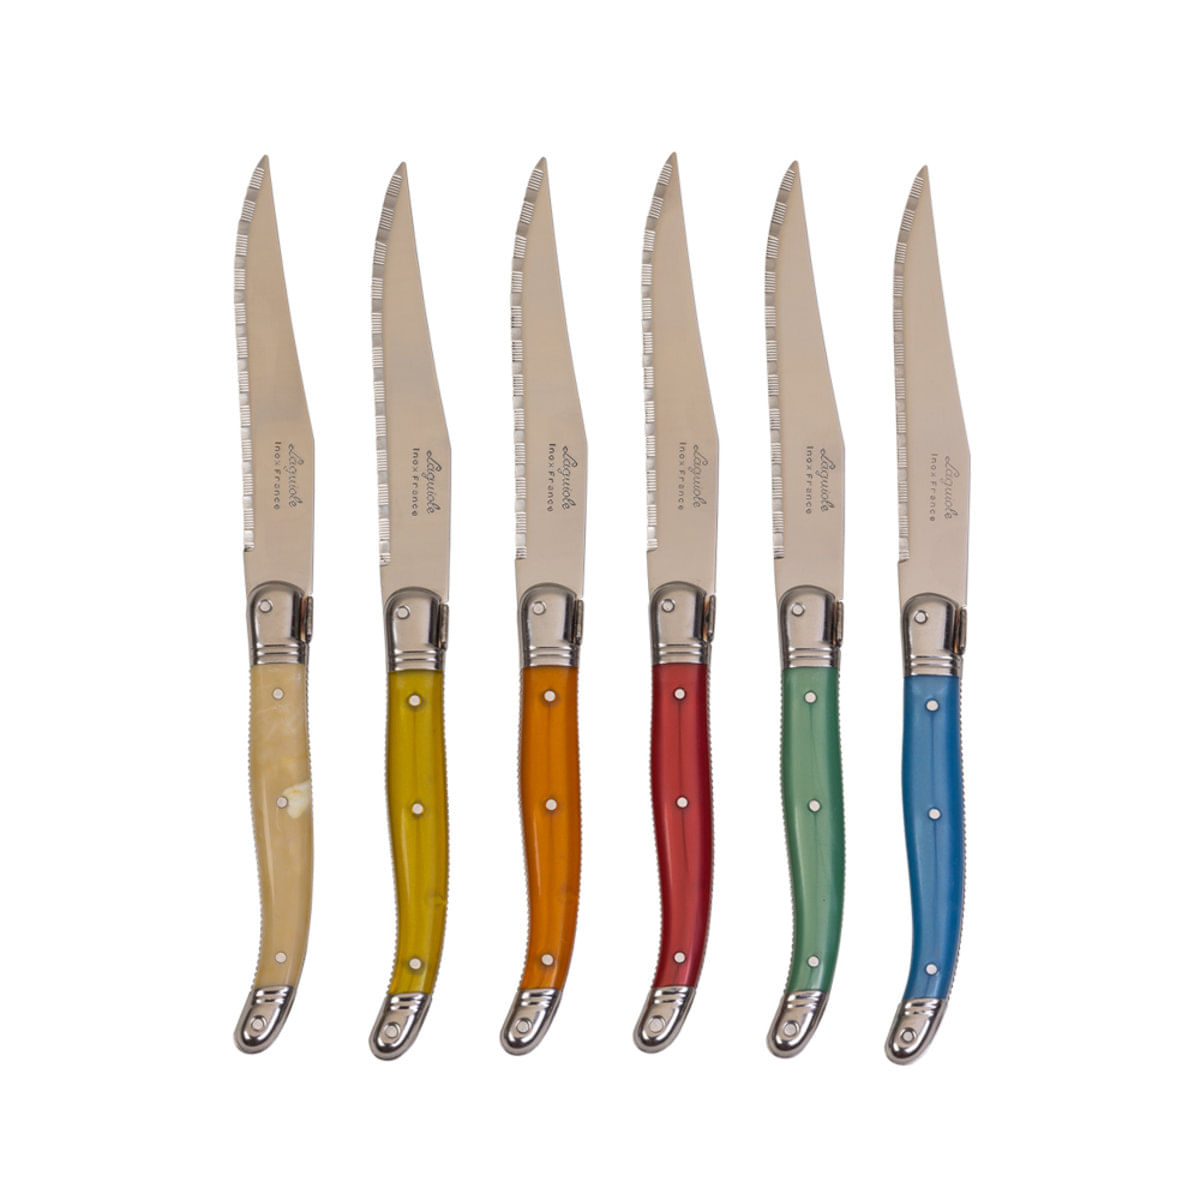 Menor preço em JEAN NERON Conjunto de 6 facas em aço inox coloridas jean neron